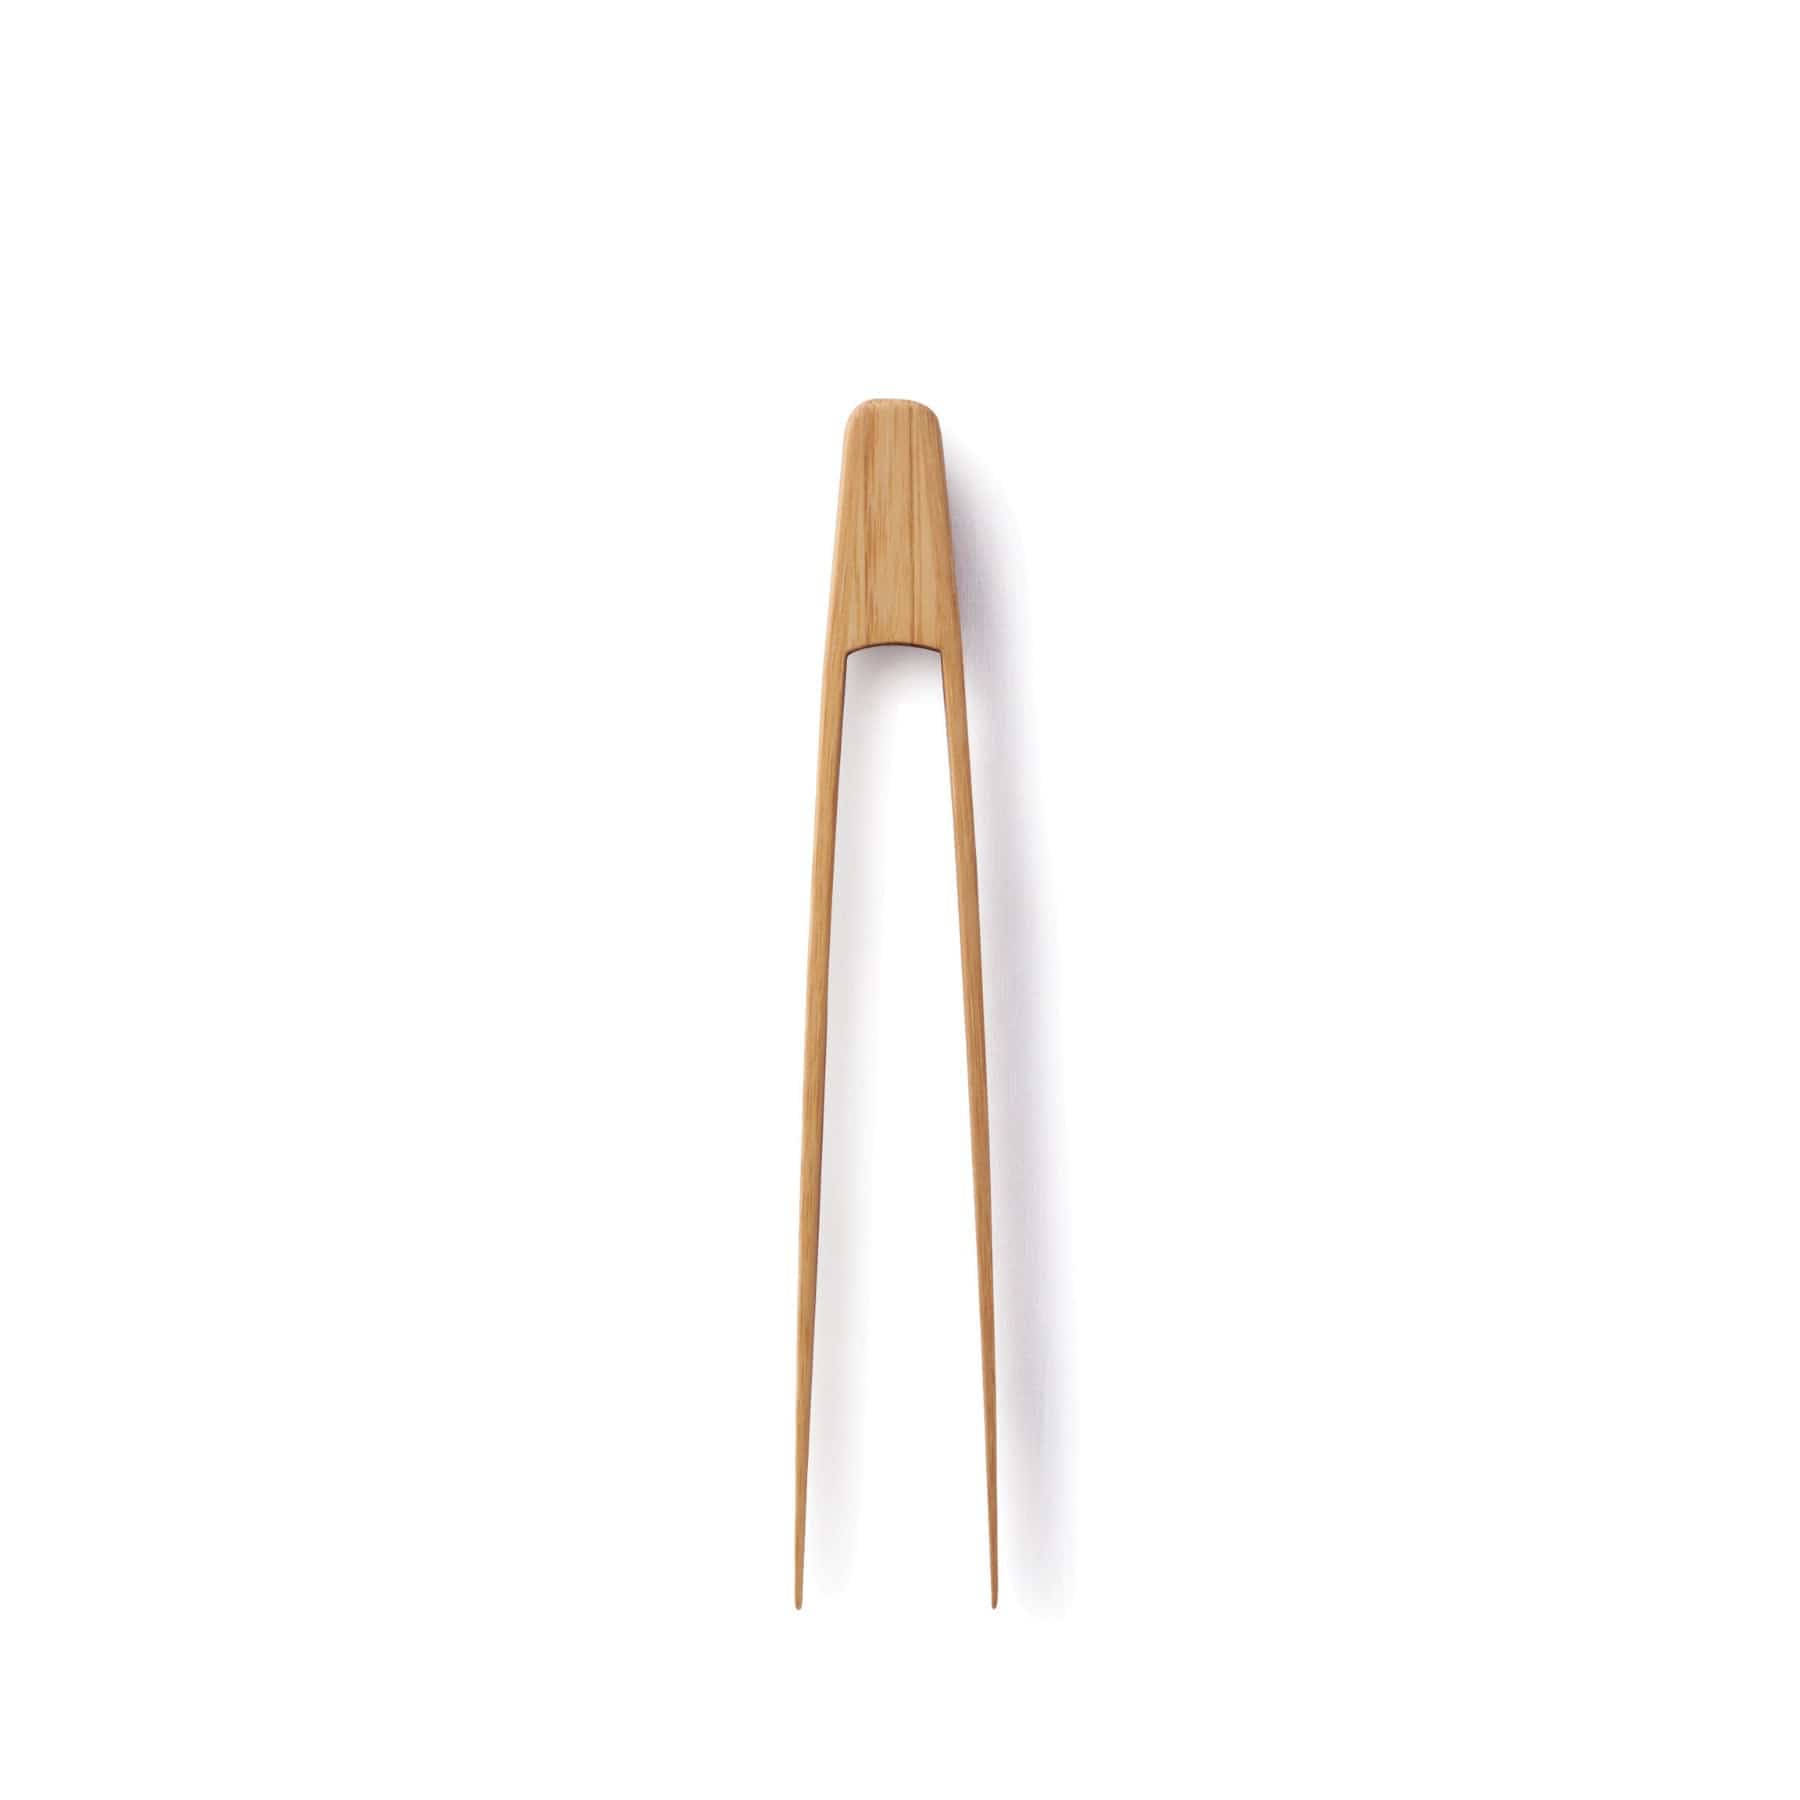 Bamboo tiny tongs